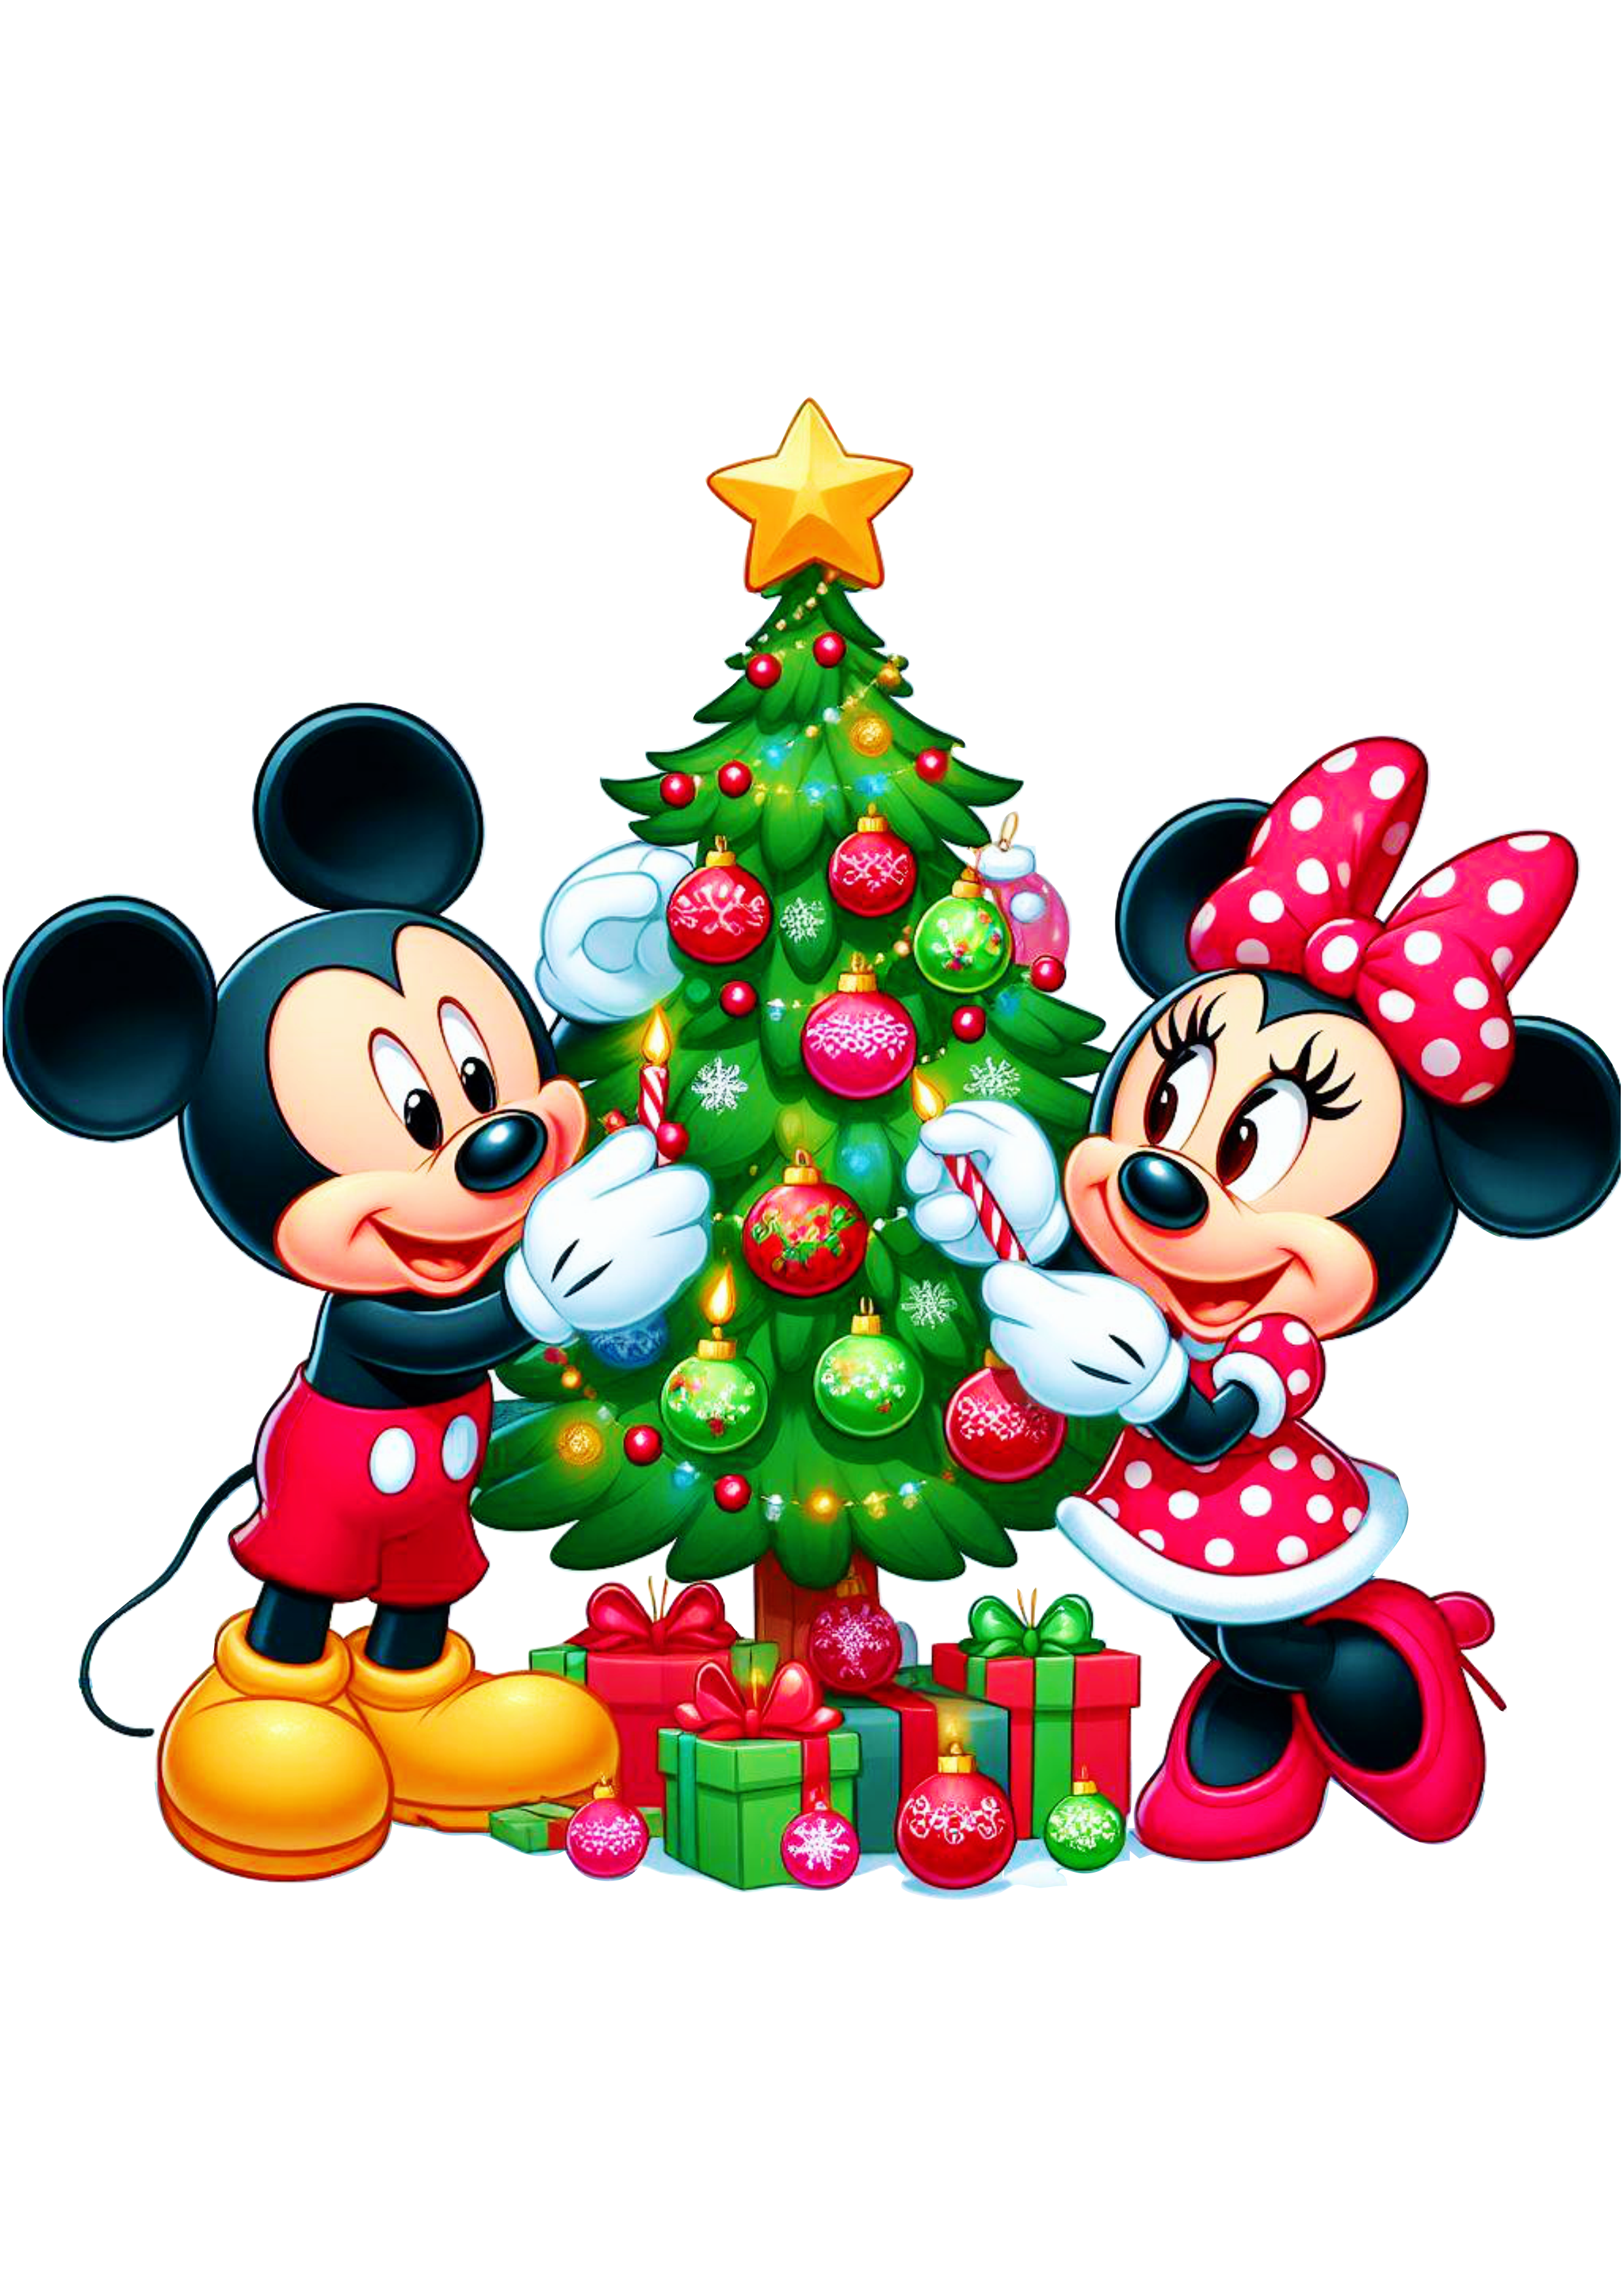 Mickey e Minnie Mouse feliz natal da disney imagem sem fundo ilustração árvore de natal pack de imagens desenho infantil png